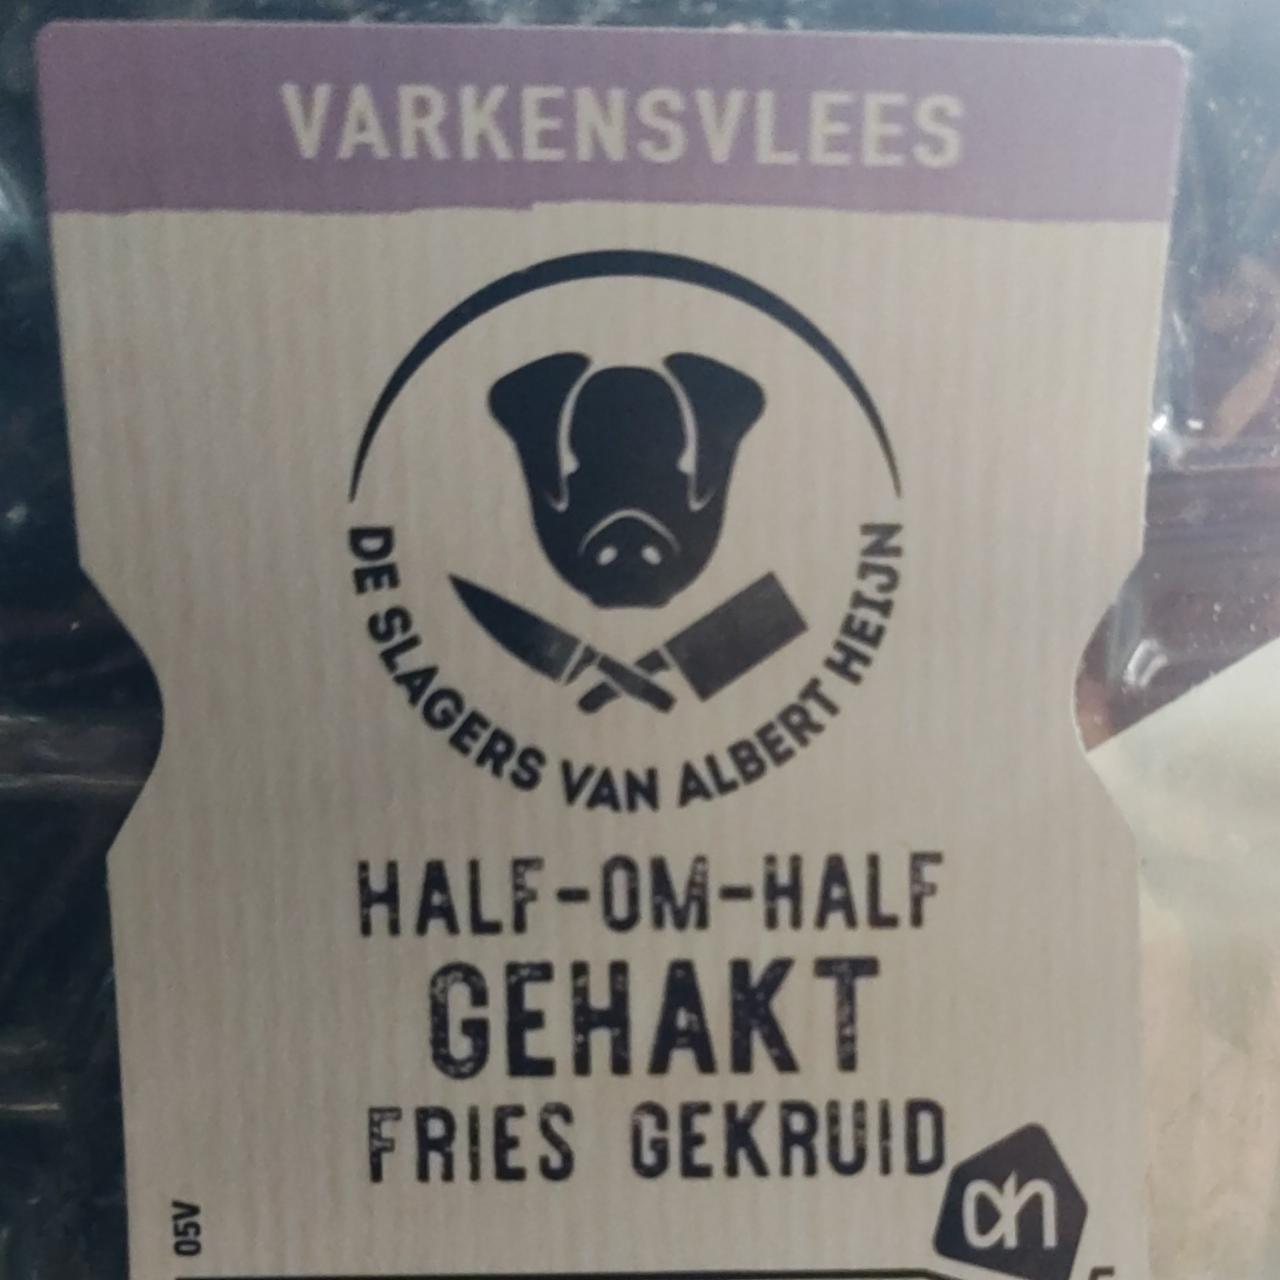 Zdjęcia - half om half gehakt Fries gekruid Varkensvlees